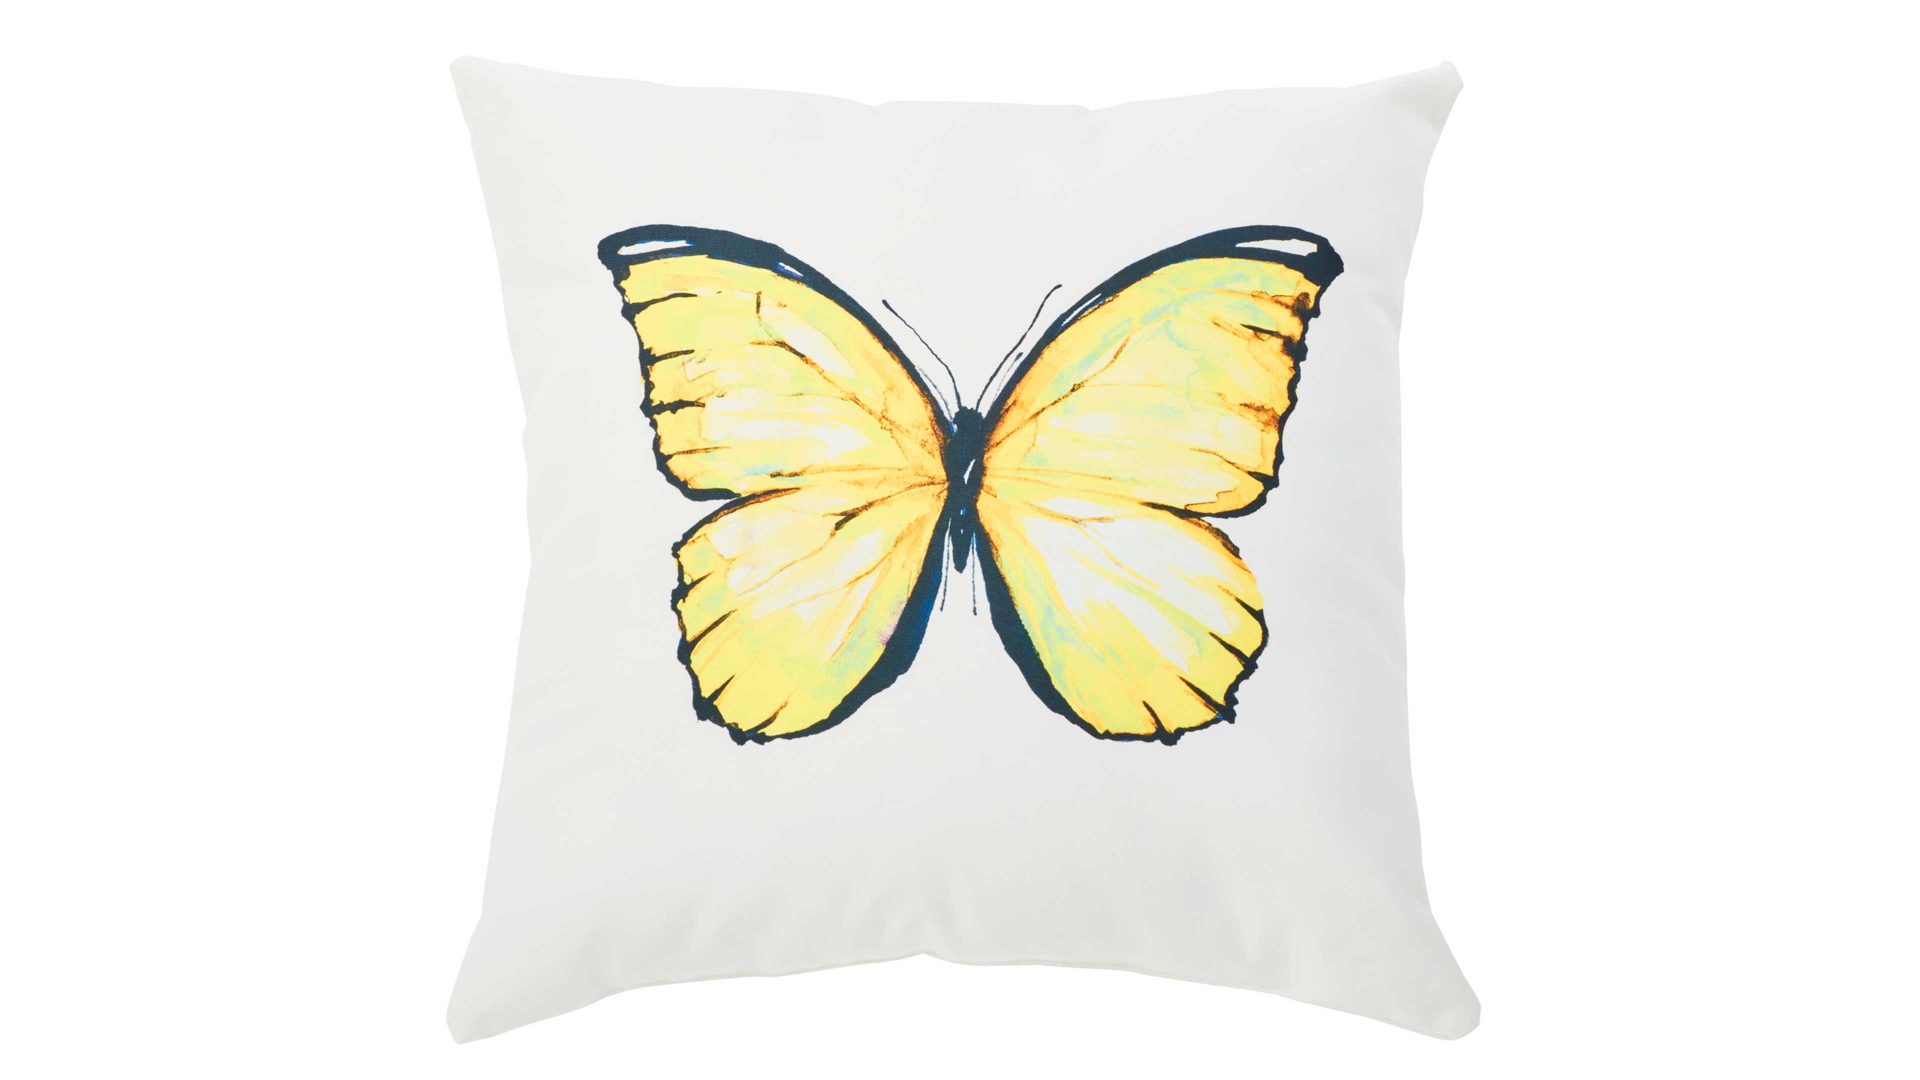 Einzelkissen Done® be different aus Kunstfaser in Gelb DONE® Kissen Cushion Outside Butterfly Dessin Schmetterling– ca. 65 x 65 cm